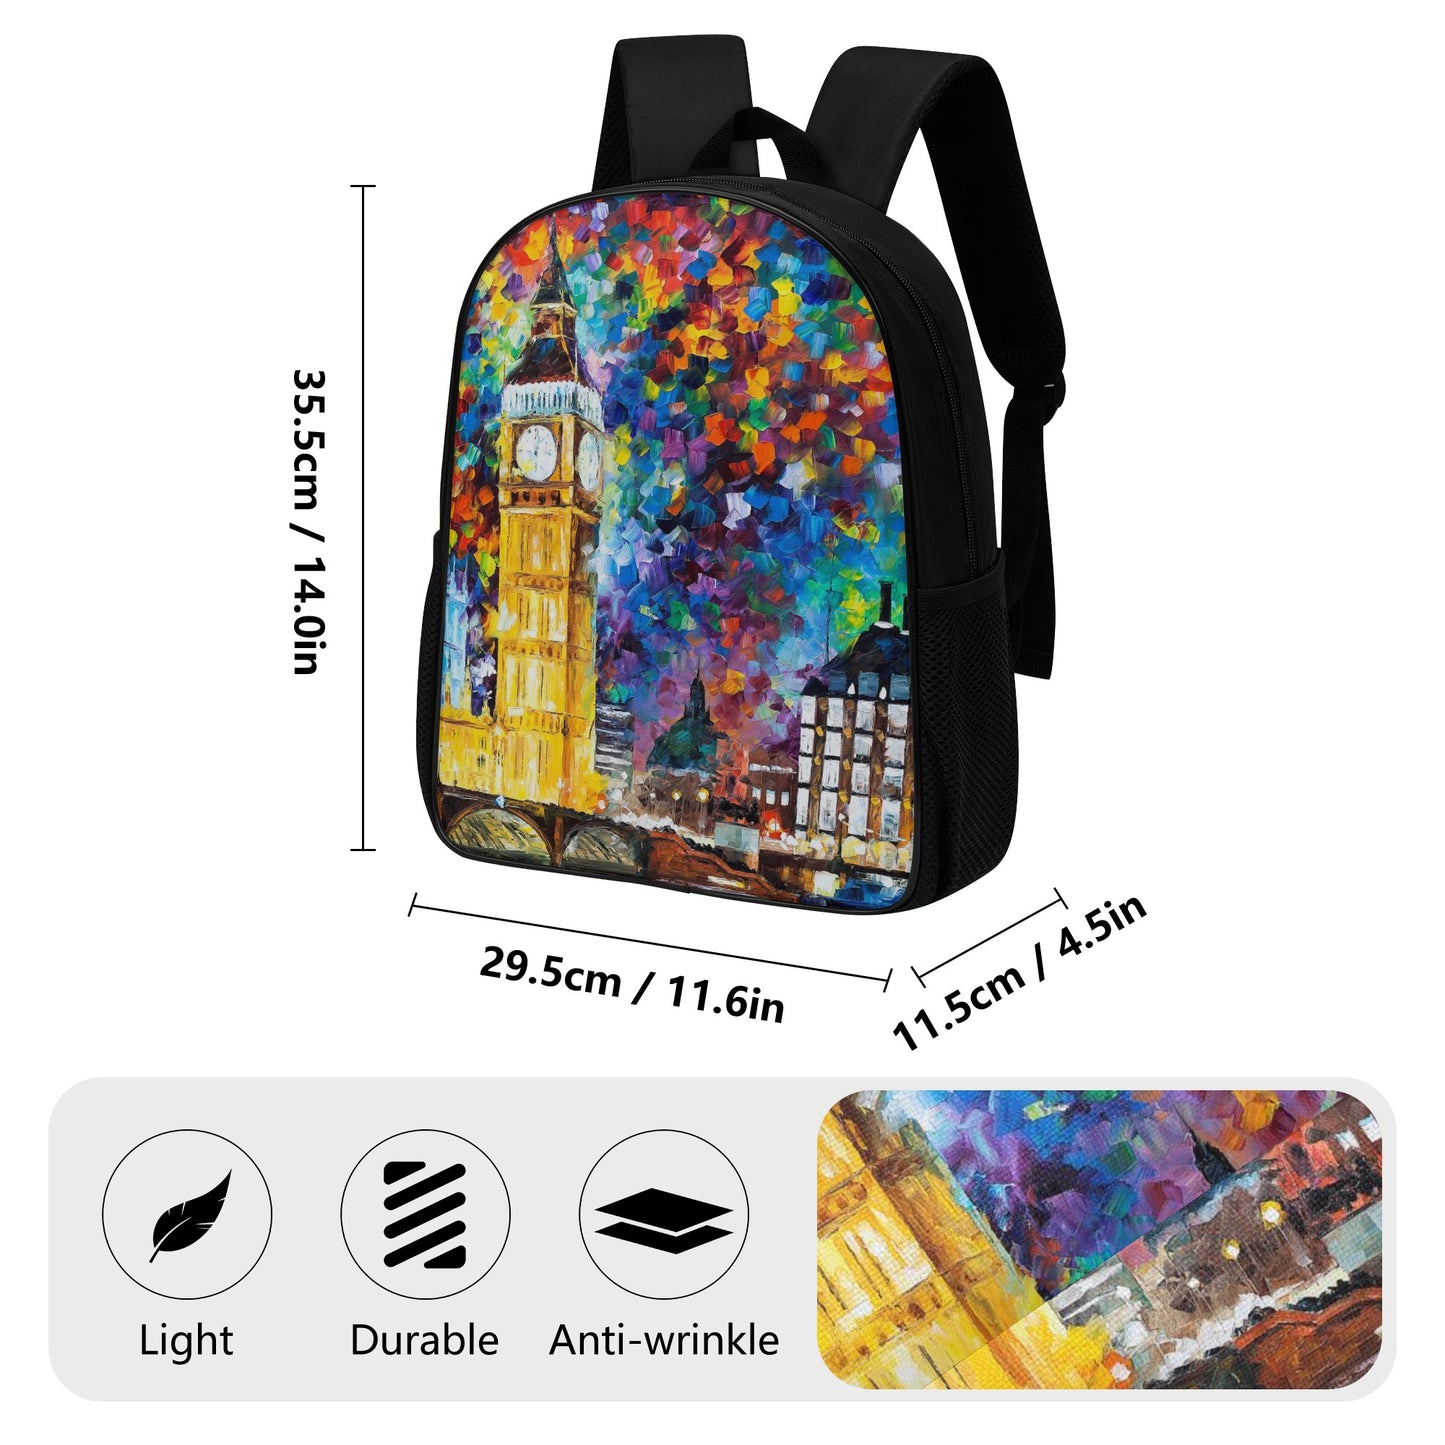 14 Inch Nylon Backpack Afremov BIG BEN LONDON 2012